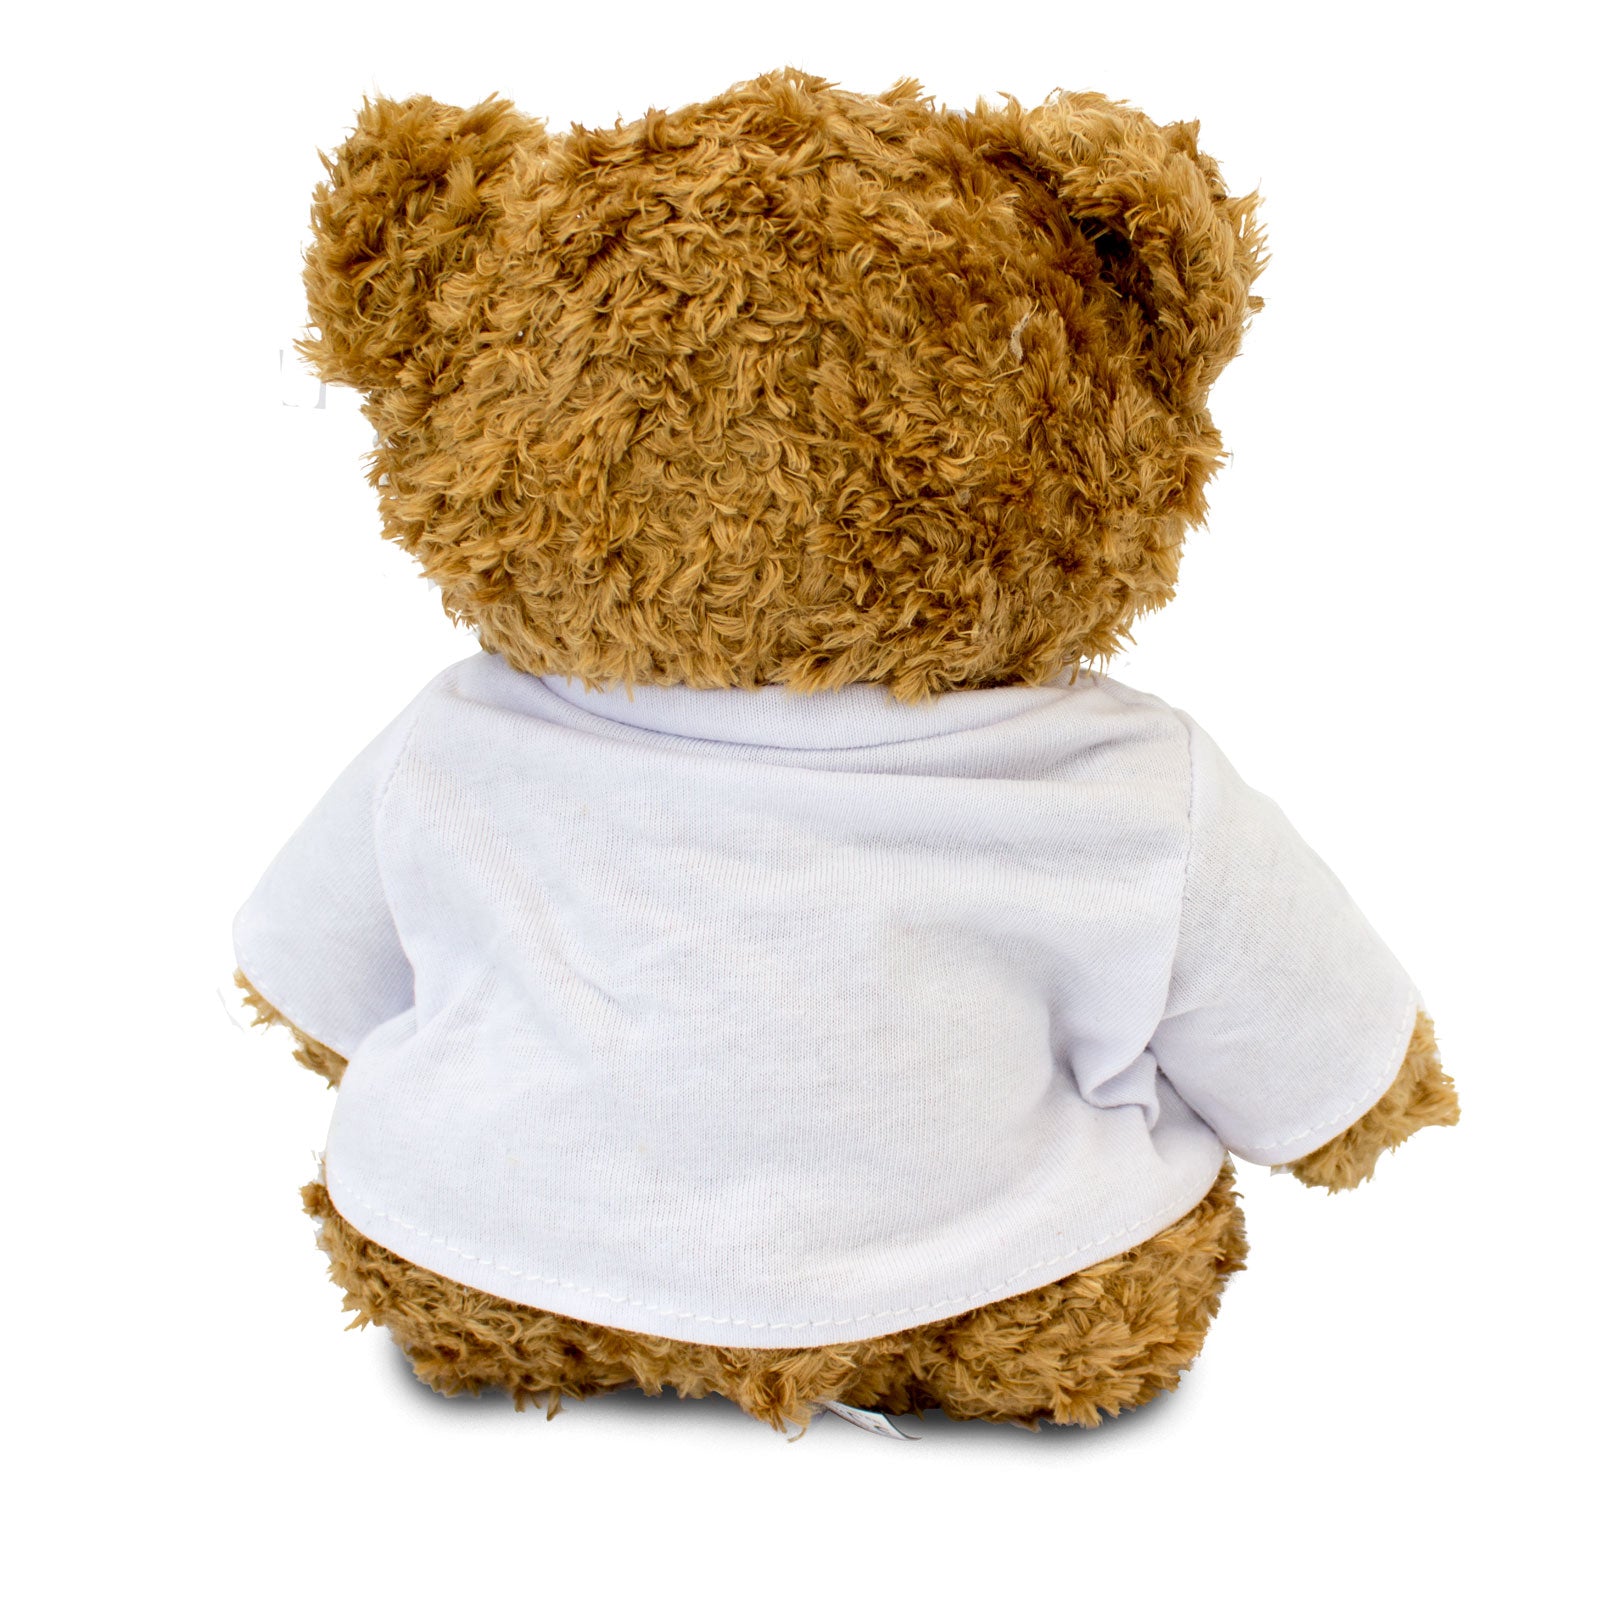 Get Well Soon Christian - Teddy Bear